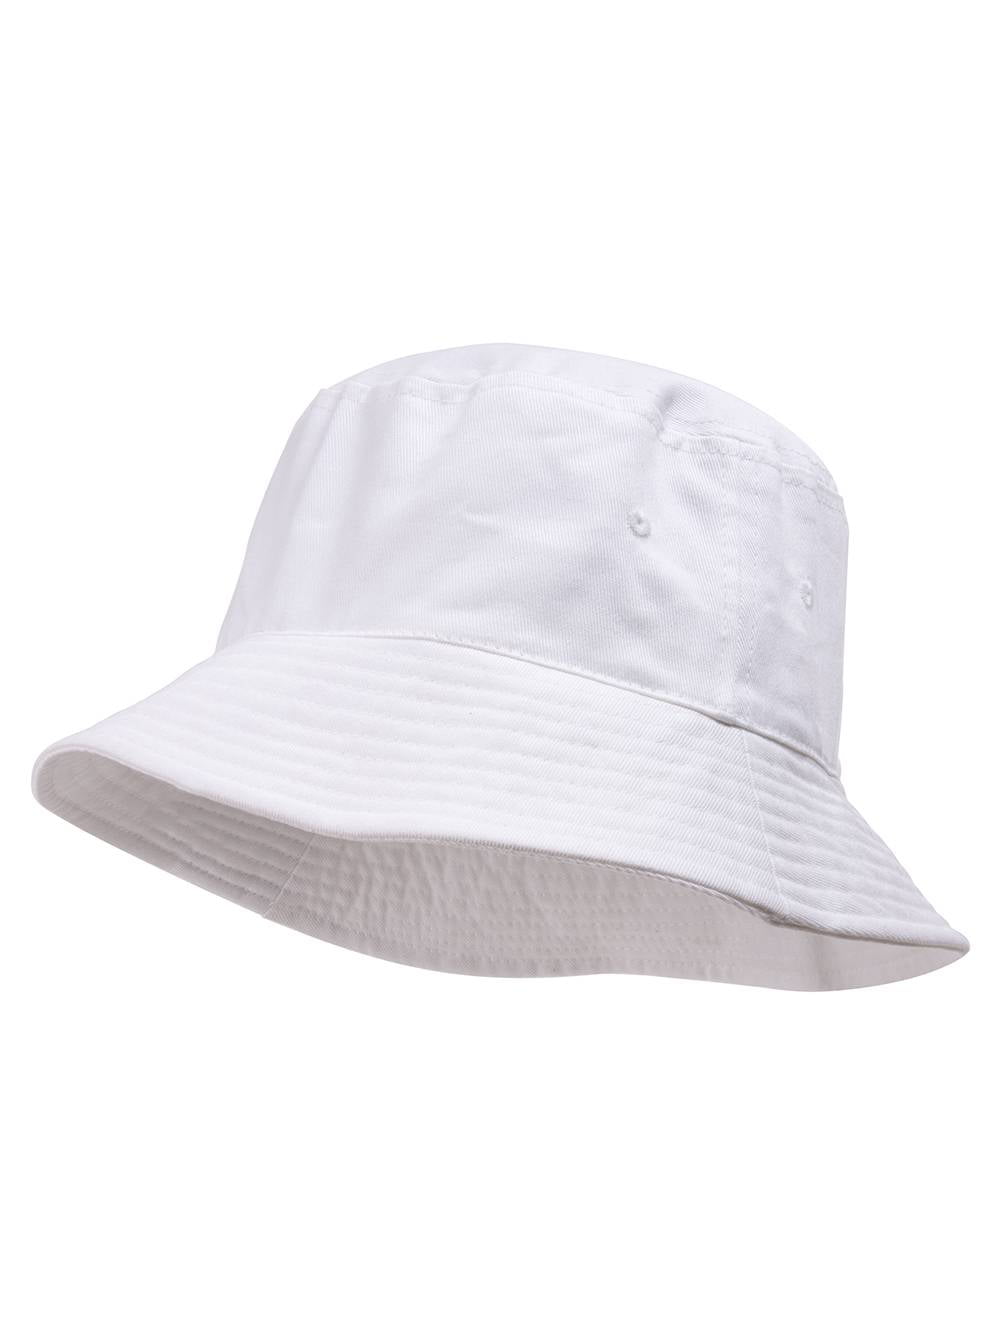 Bucket Hat For Men Women - Cotton Packable Fishing Cap, White S/M 